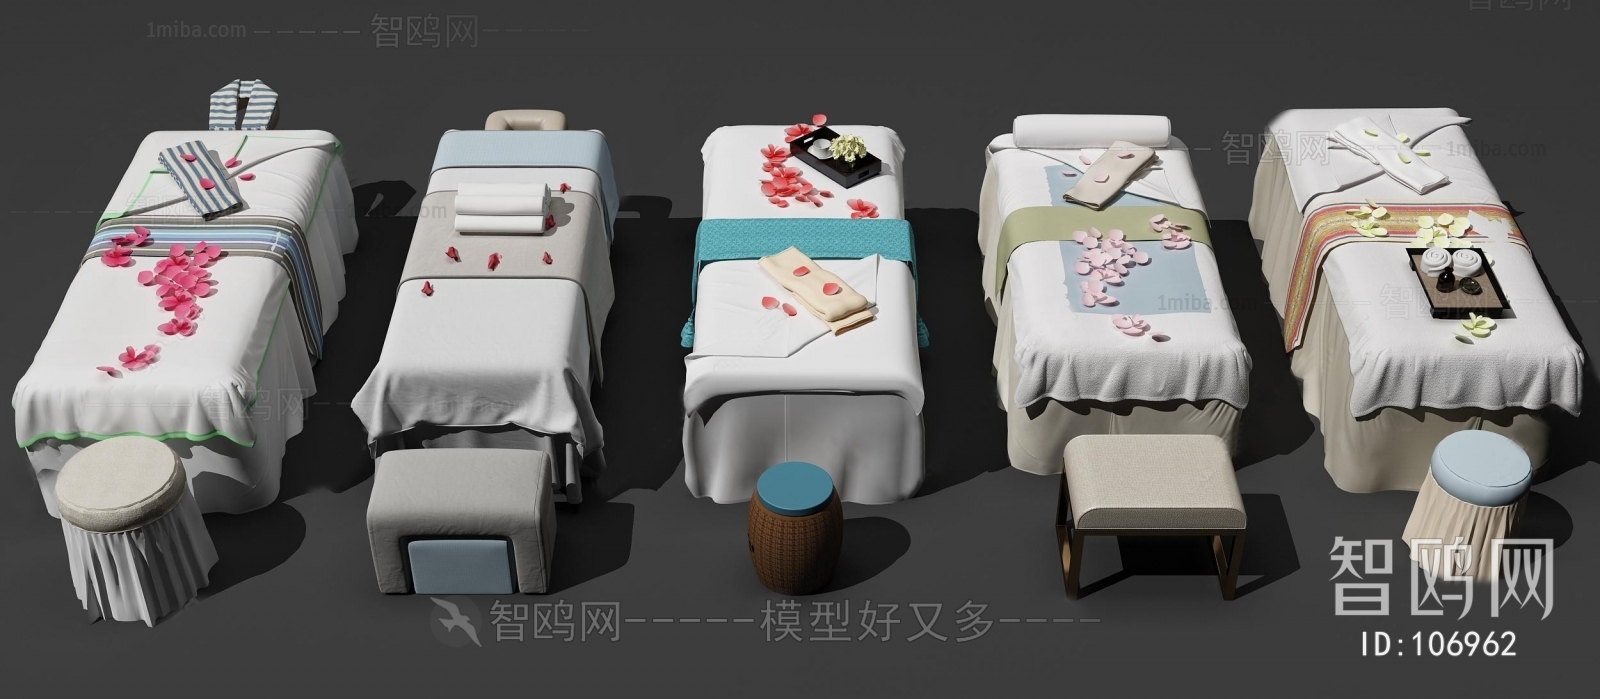 新中式美容护理床按摩床